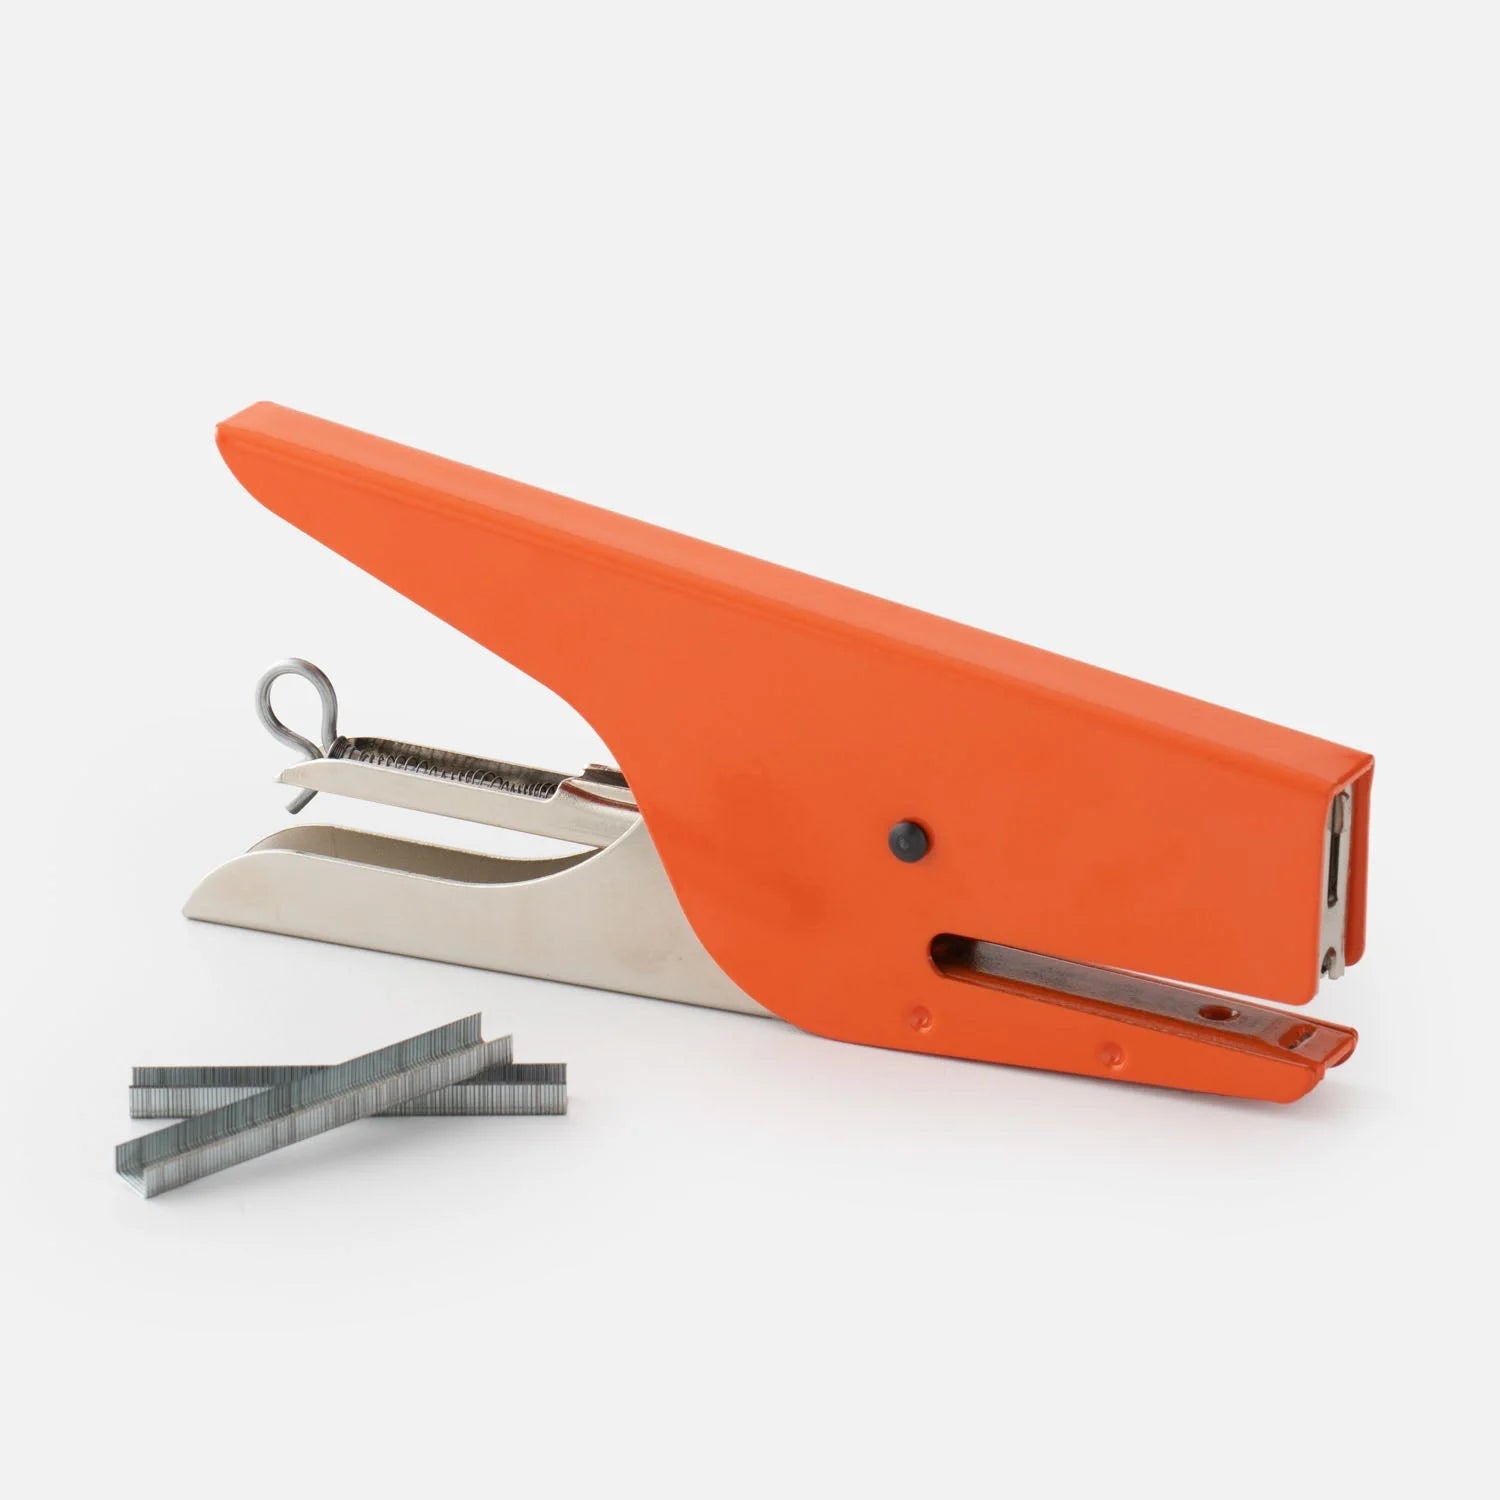 A vibrant orange Italian hand held stapler.